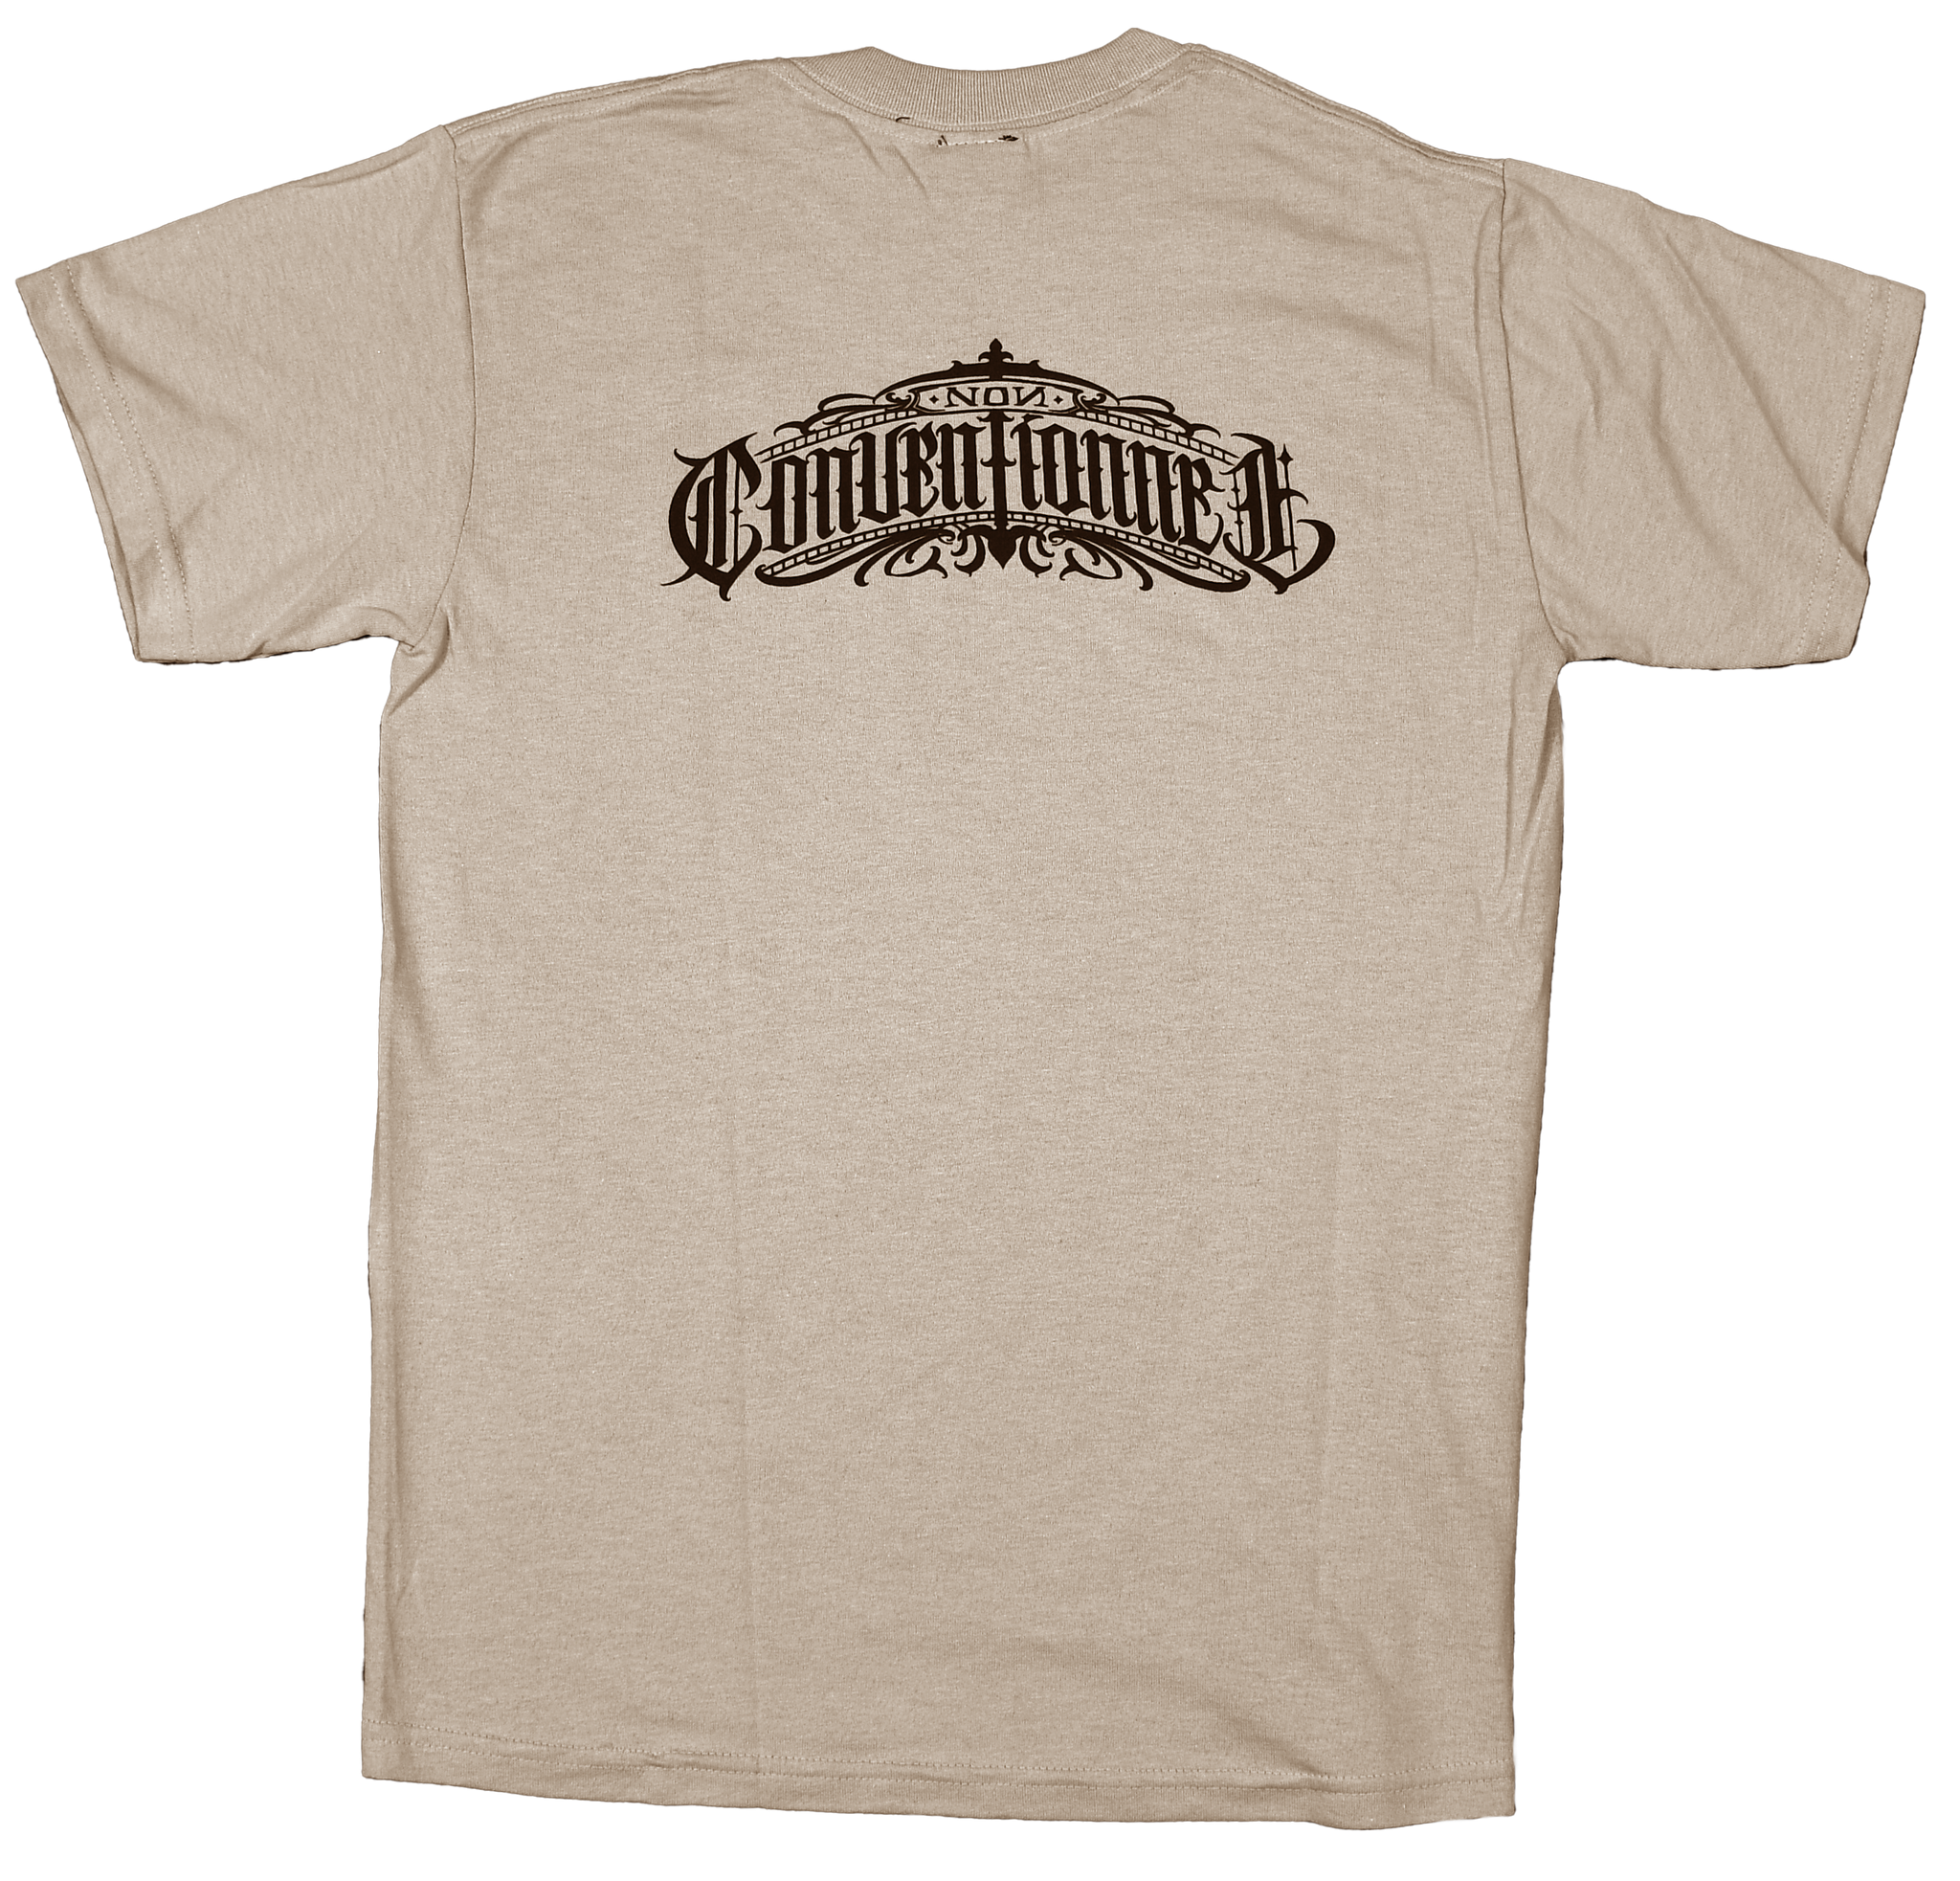 T-shirt Non conventionnel (beige)